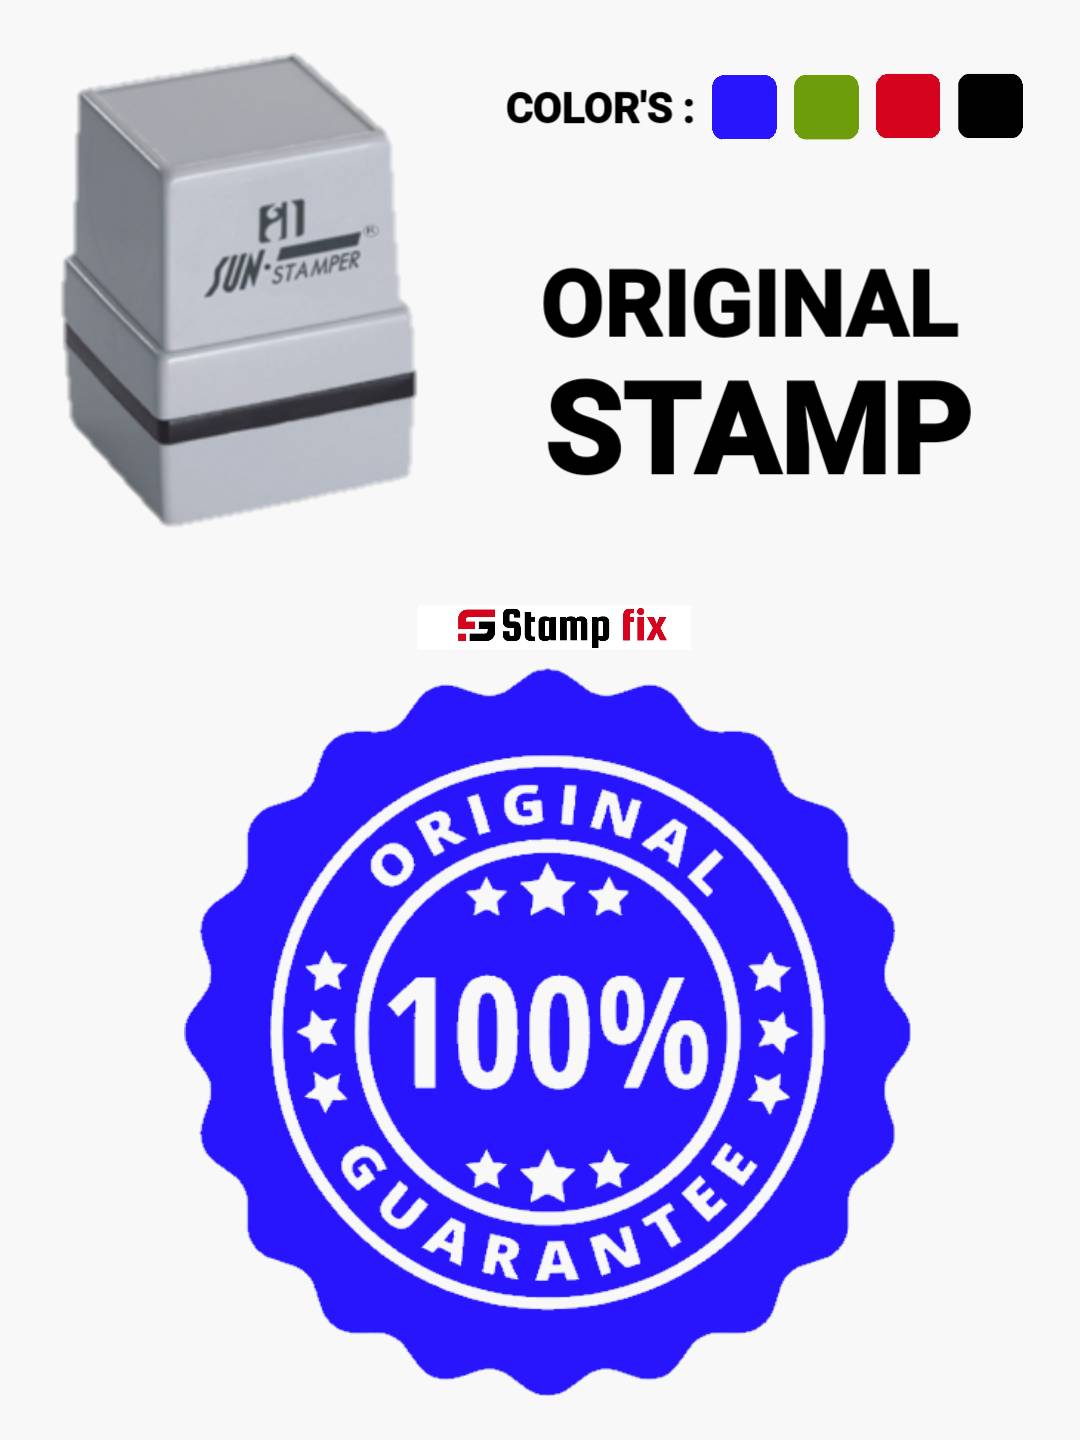 Original stamp, Self ink stamp, pre ink stamp, sun stamp, rubber stamp, nylon stamp, polymer stamp